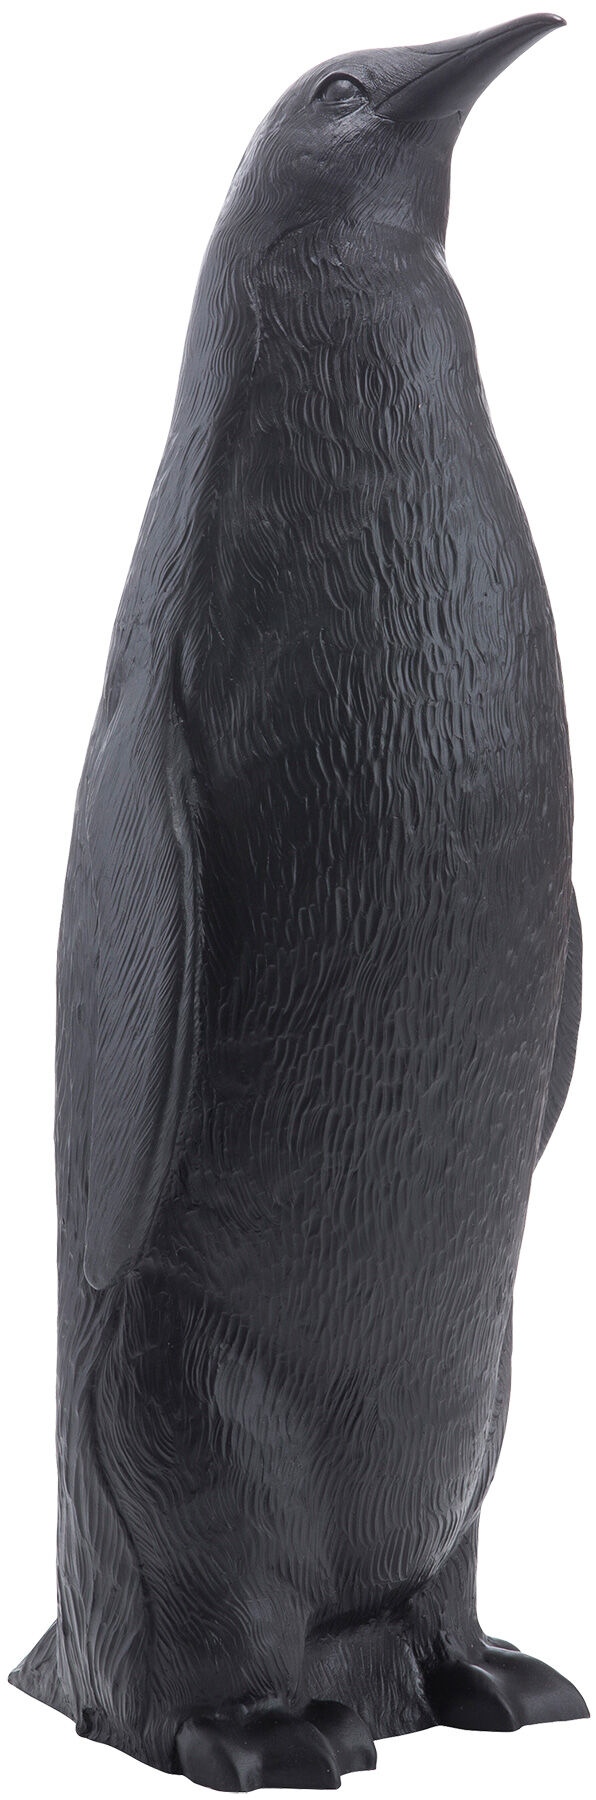 Sculpture "Penguin II Upright" (2006), version noire von Ottmar Hörl